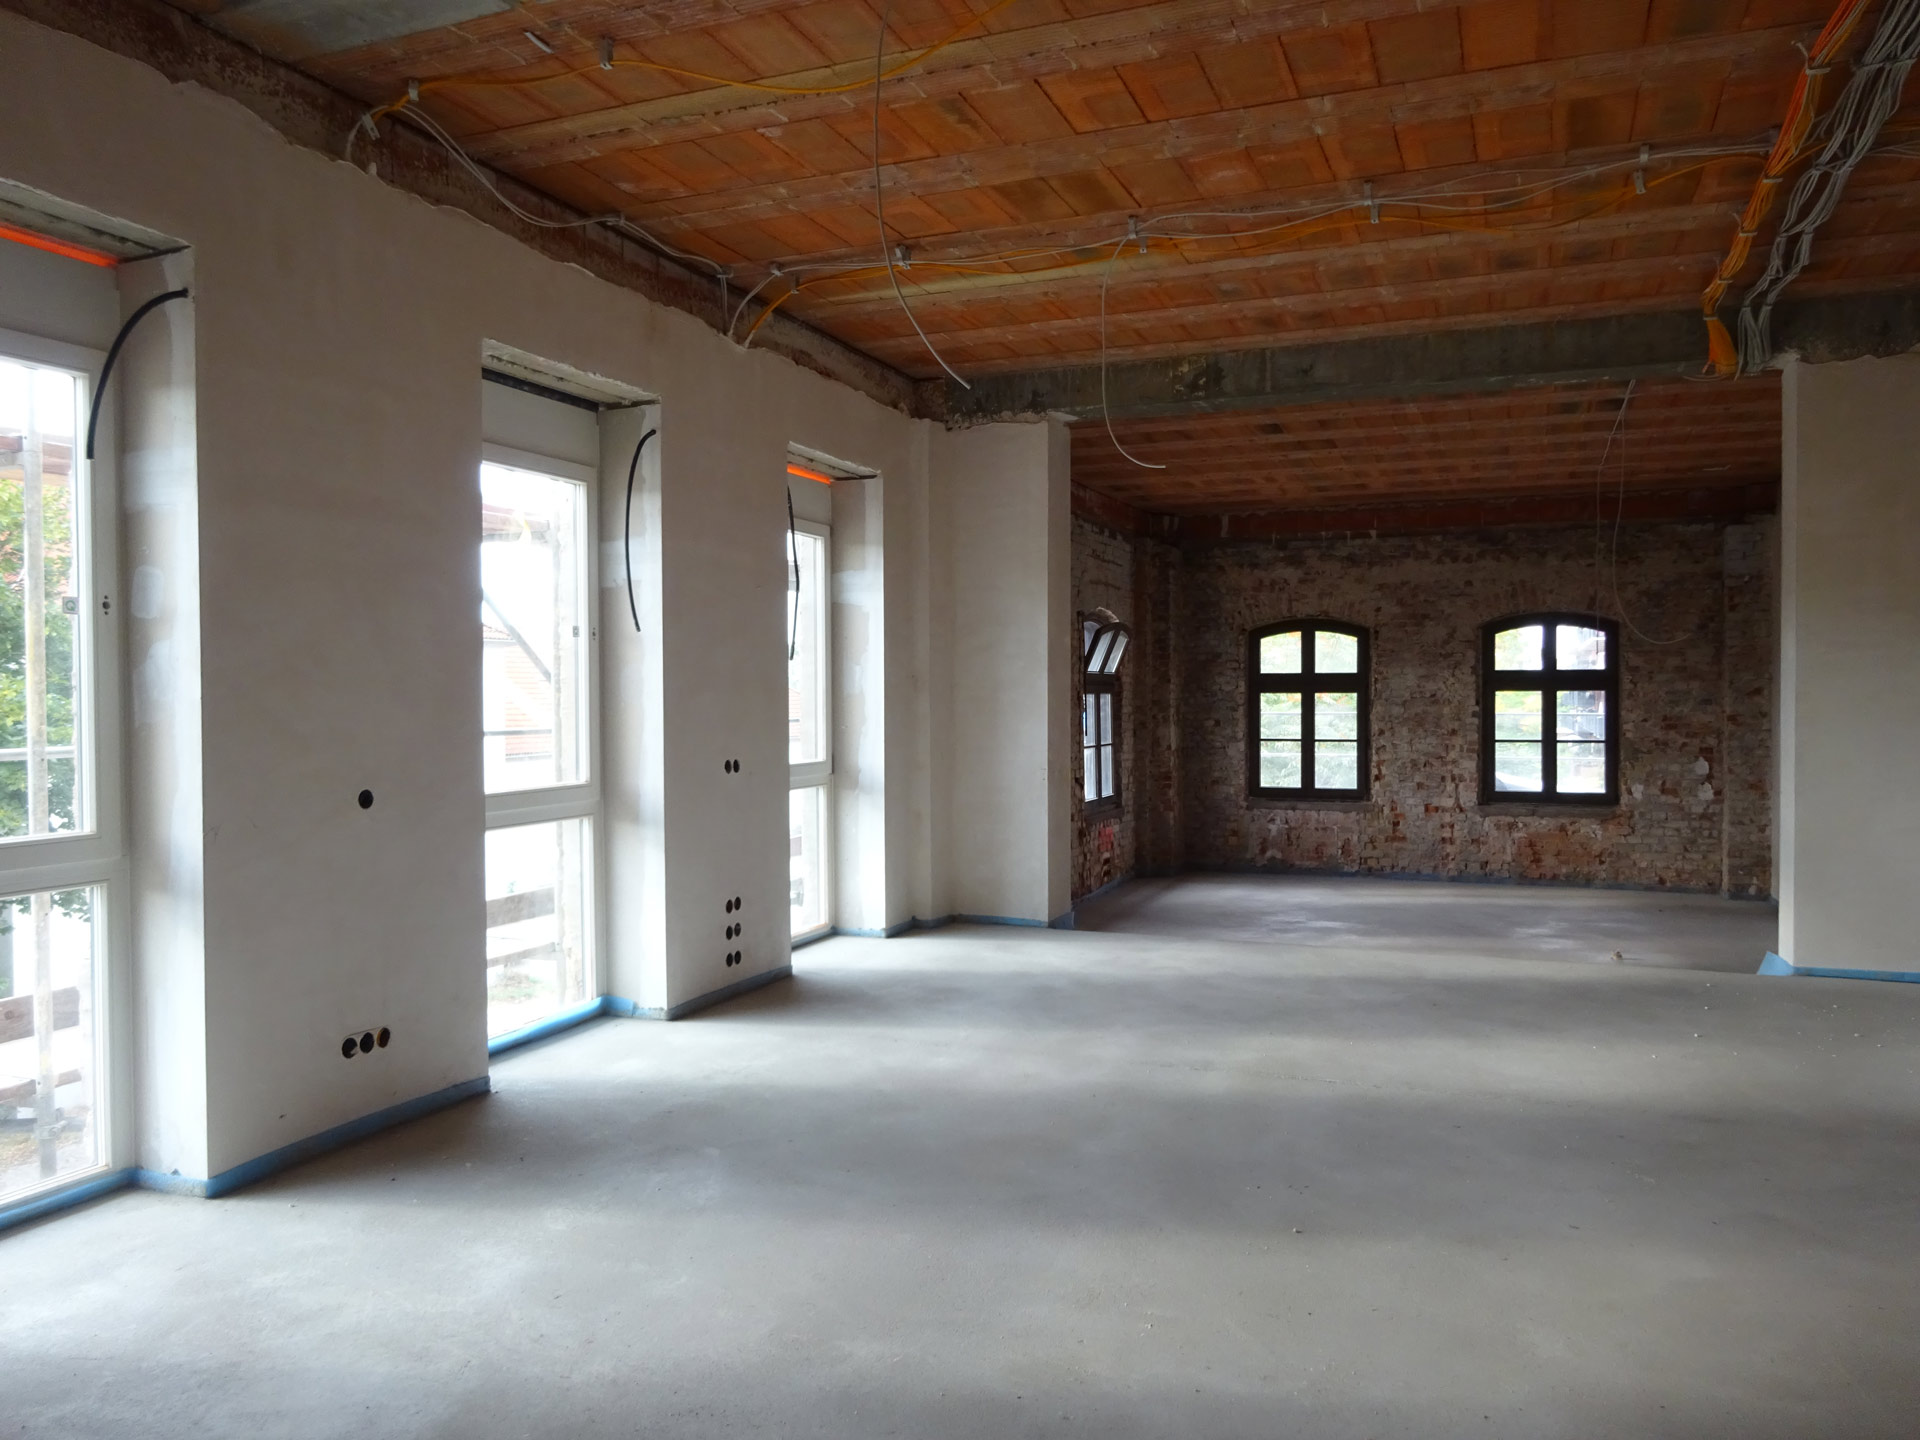 Wohn- und Geschäftshaus in historischem Ambiente in Magdeburg großzügige Büroflächen im 1.OG ein Entwurf der Sattler+Täger Architekten GmbH